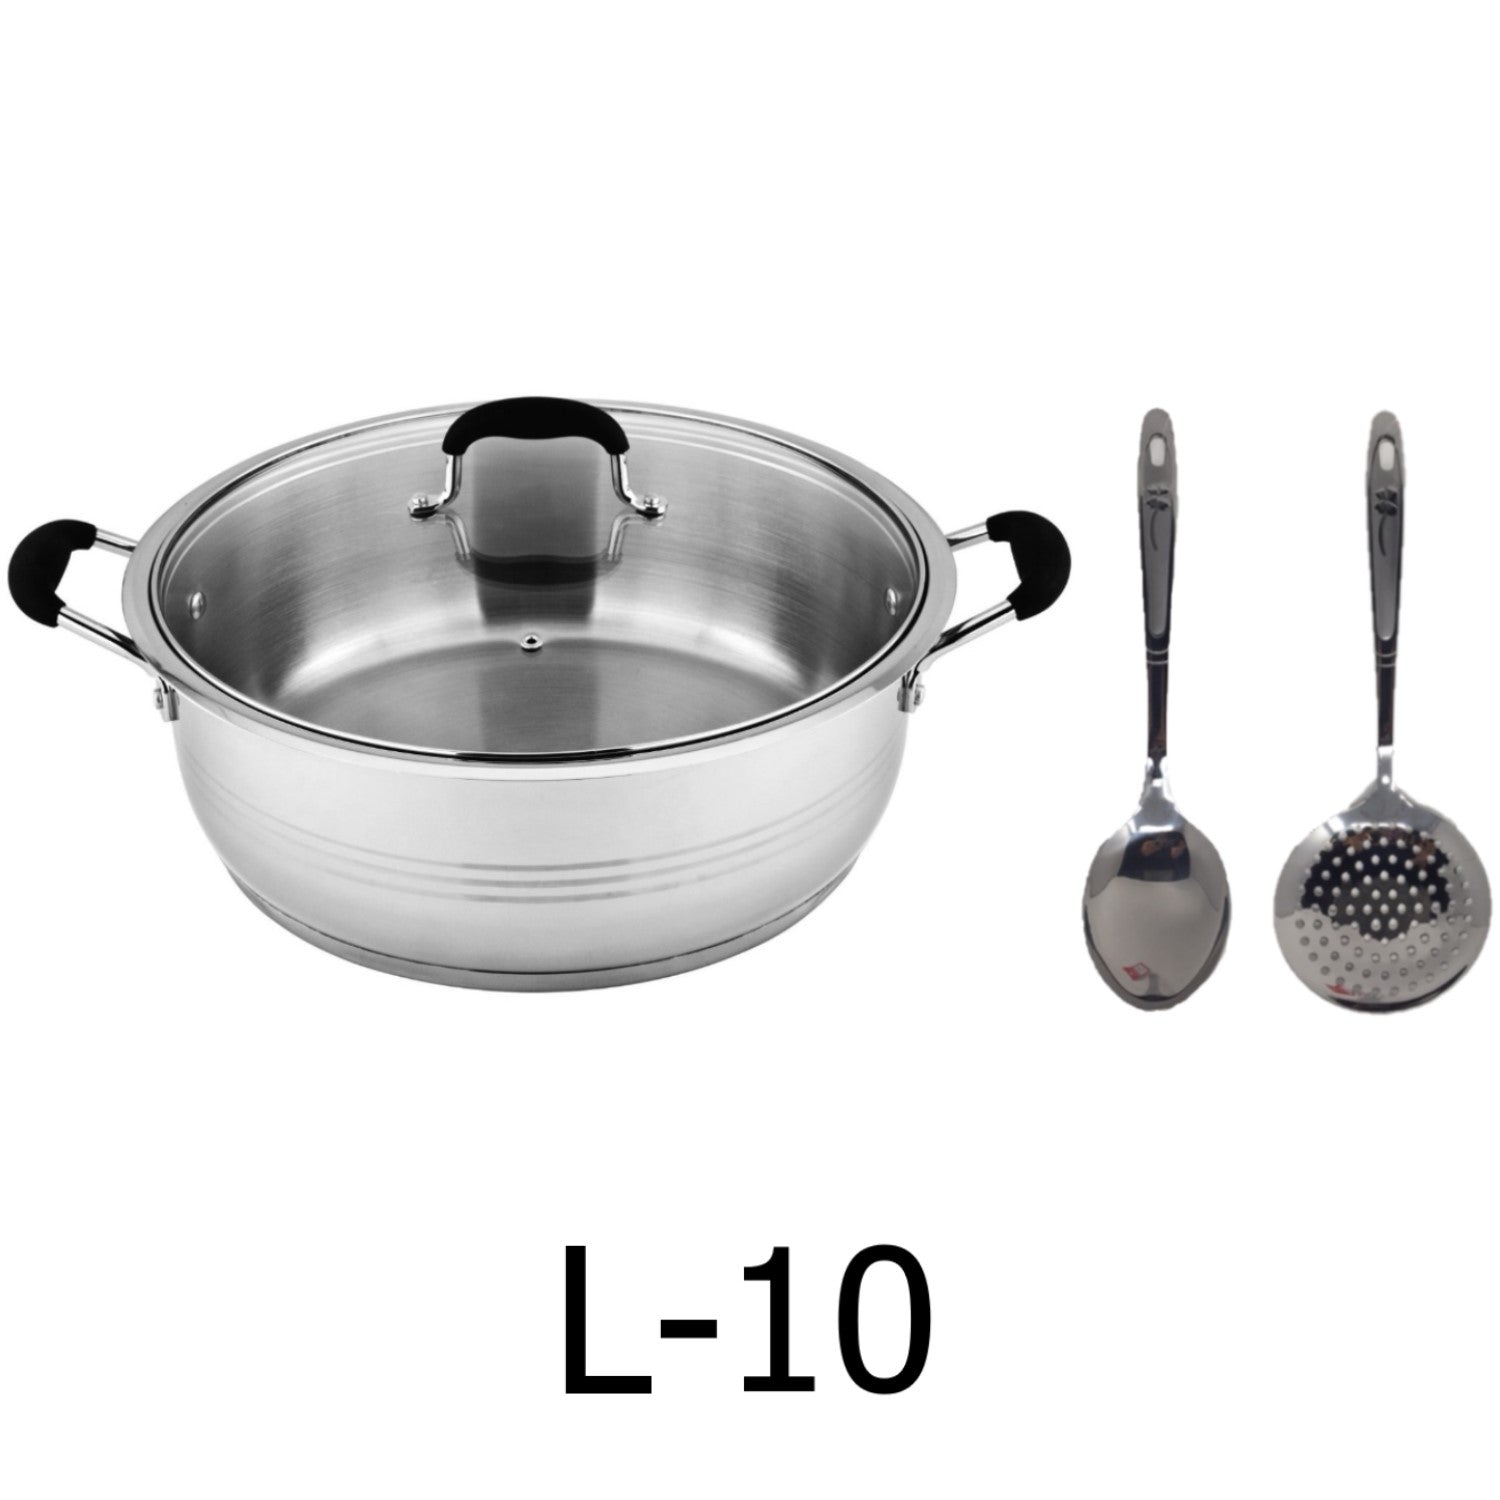 10 QT Pot With Lid